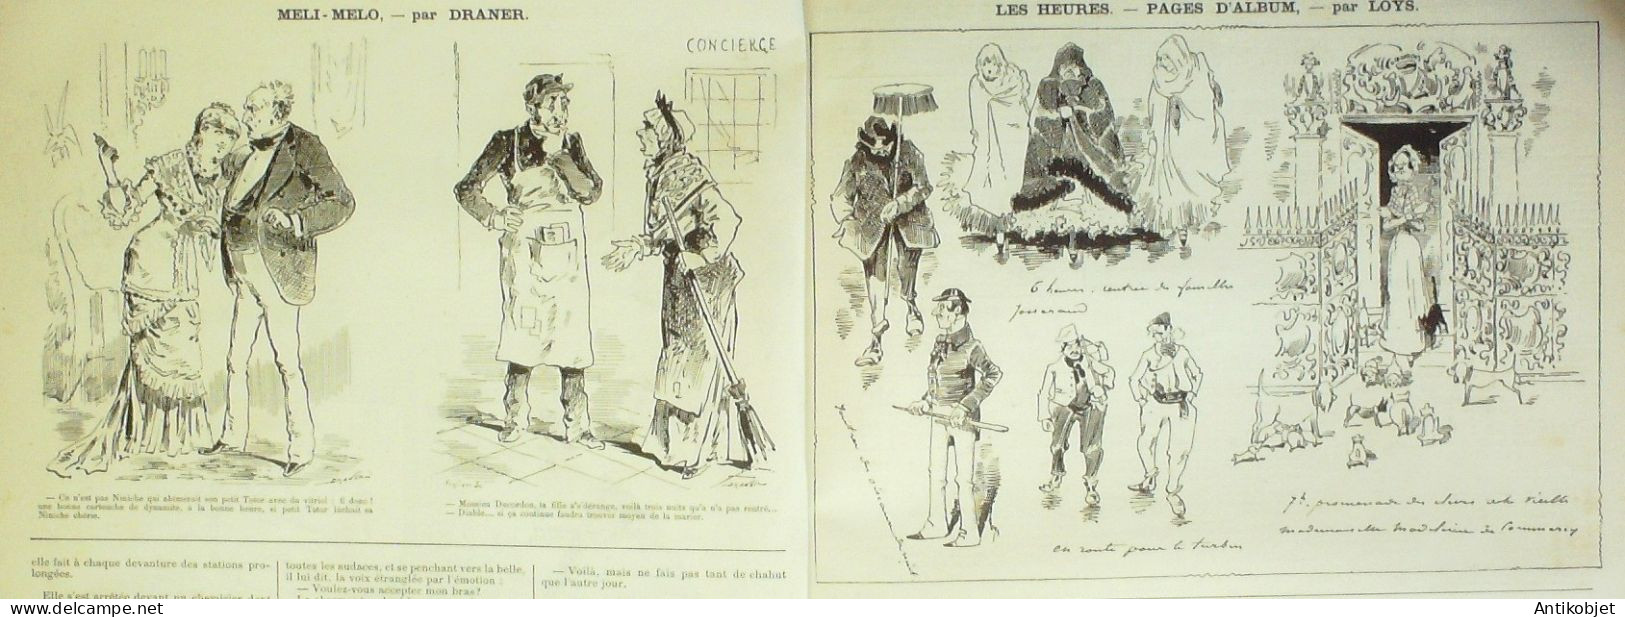 La Caricature 1882 N°151 Armées Allemandes Bavière Caran D'Ache Loys Trock - Magazines - Before 1900